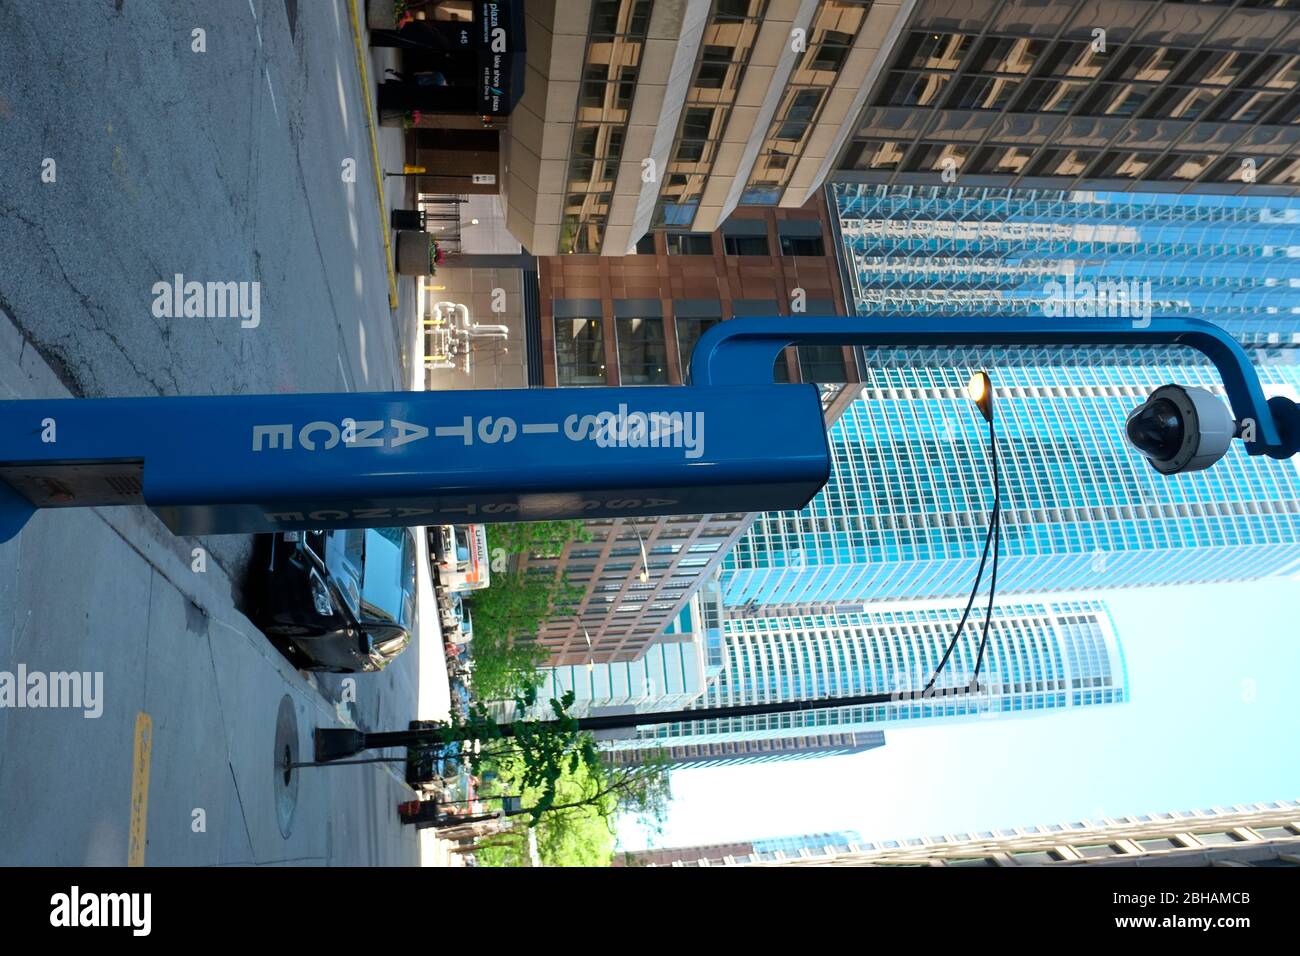 Dispositif de communication d'urgence avec caméra. Centre ville de Chicago, Illinois. Banque D'Images